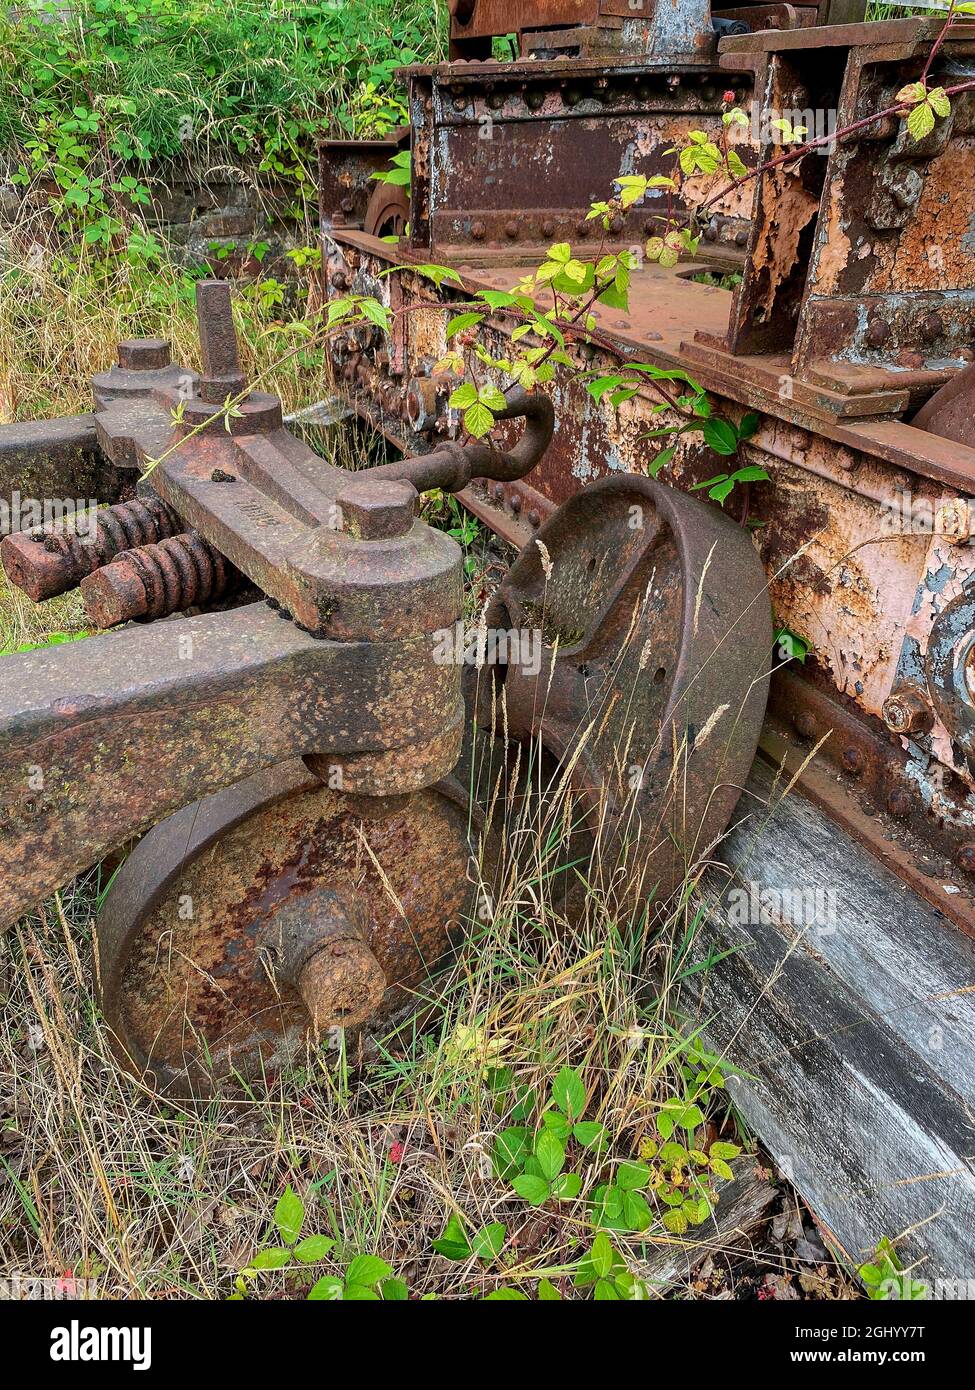 Industrieller Zerfall - alte verlassene Bergbaugeräte rosten langsam weg. Stockfoto